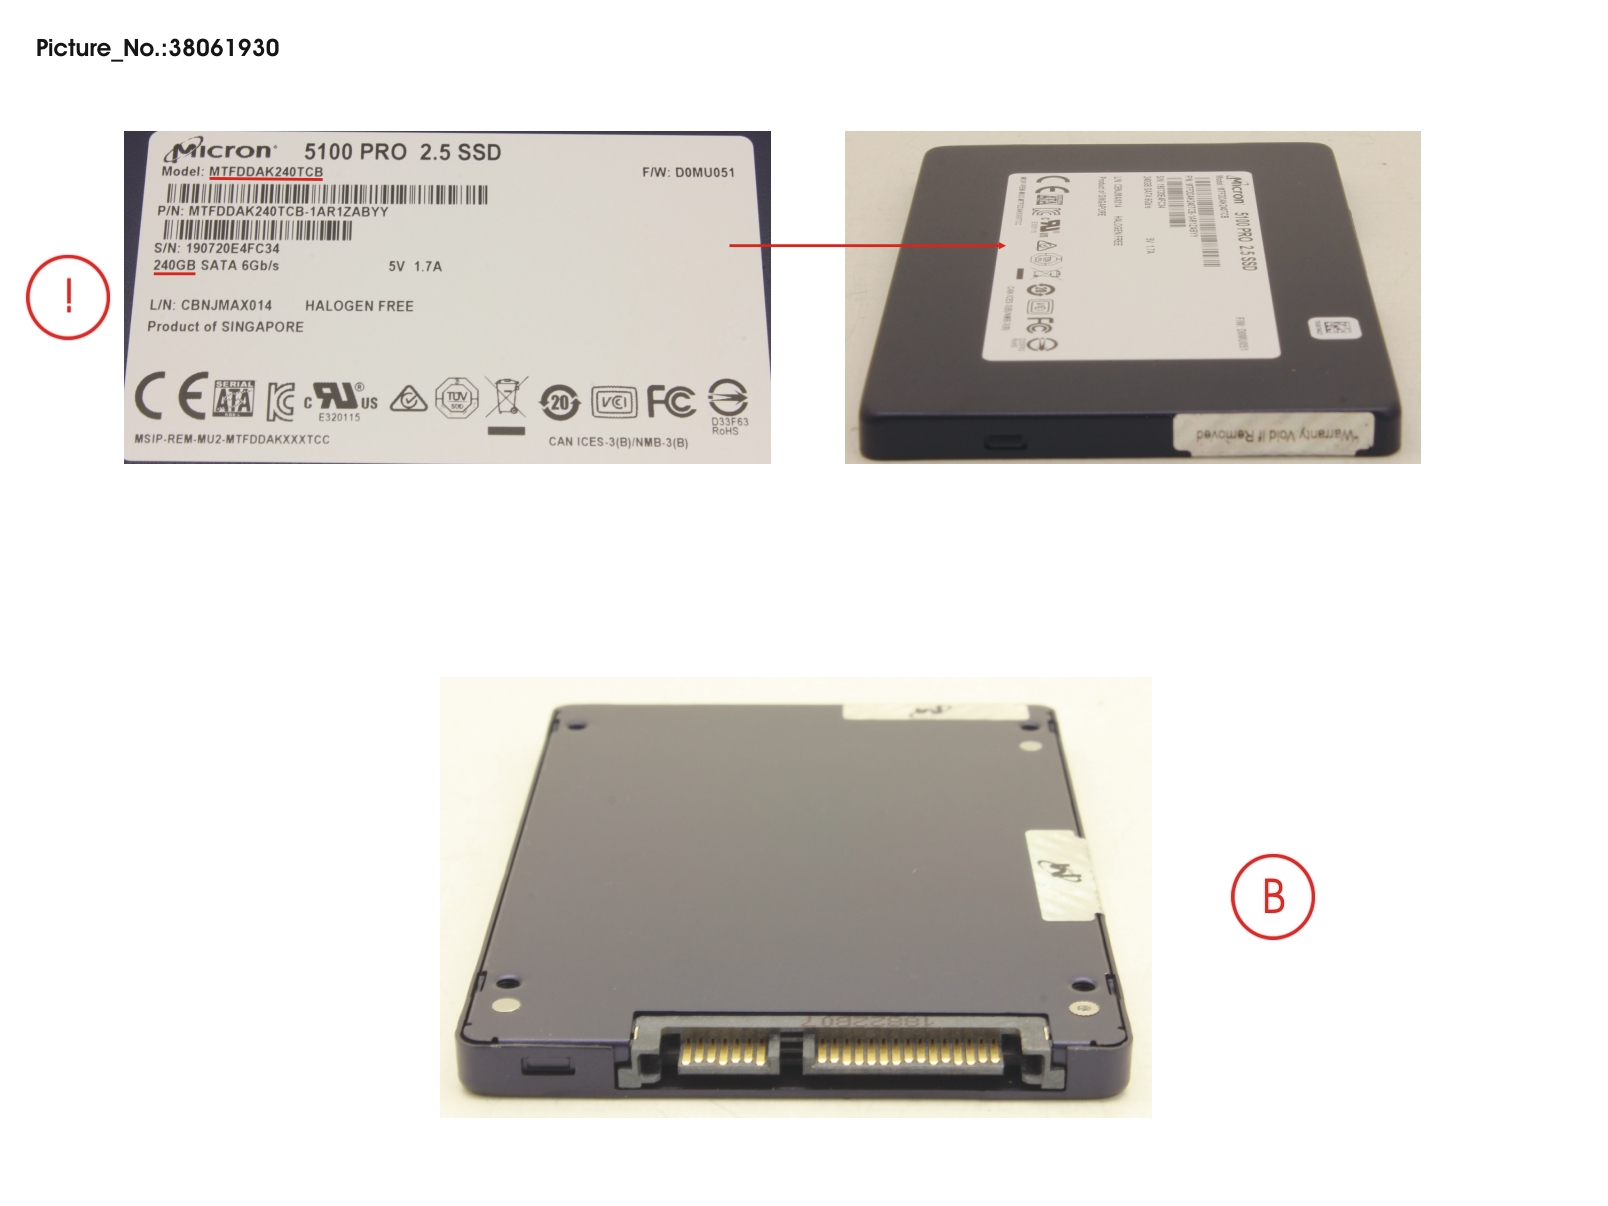 SSD S3 240GB 2.5 SATA